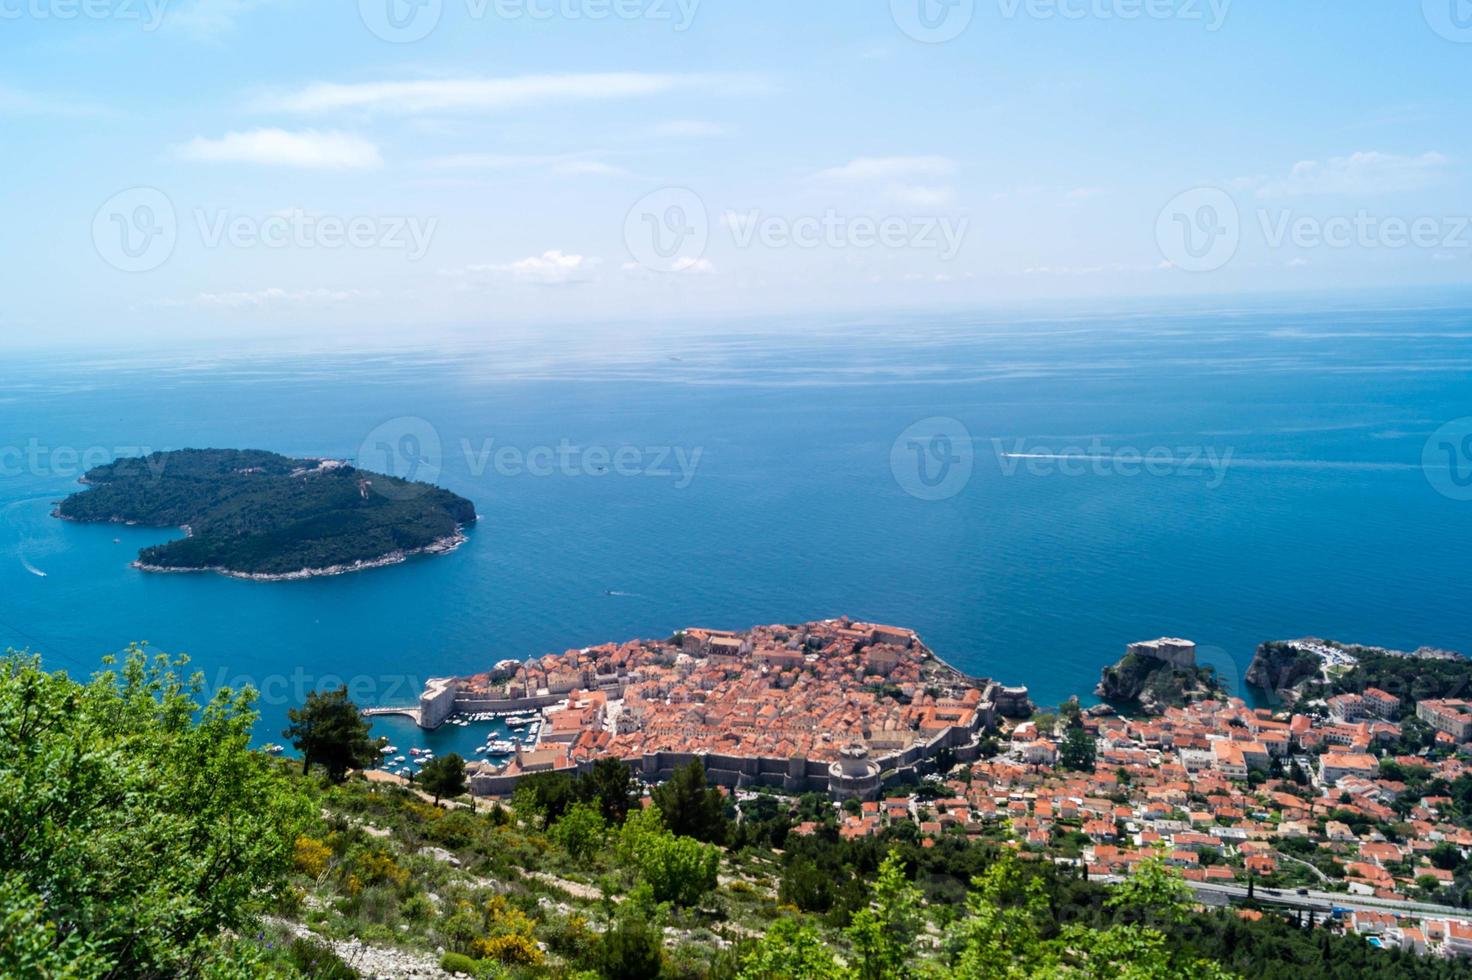 vue depuis le mont sdr sur otok lokrum, île près de dubrovnik croatie photo